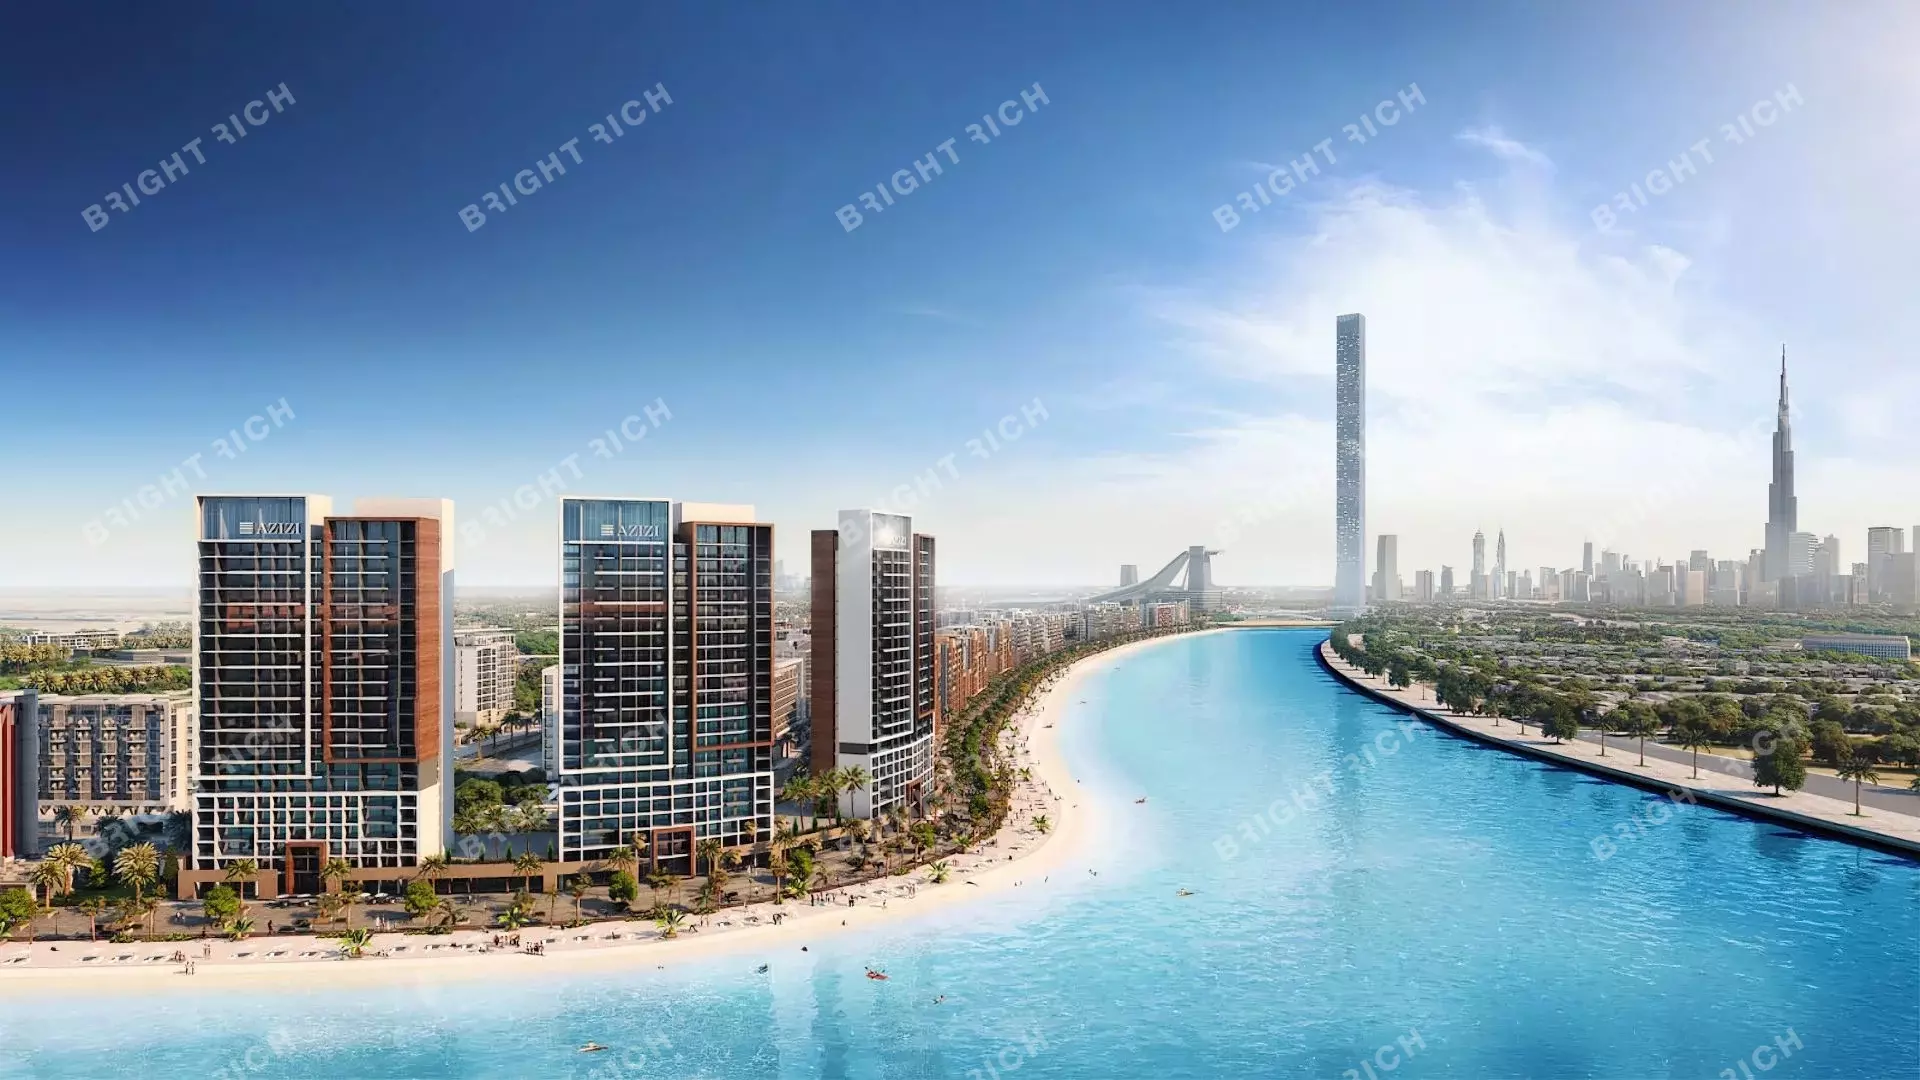 Azizi Riviera Building 10, apart complex in Dubai - 0